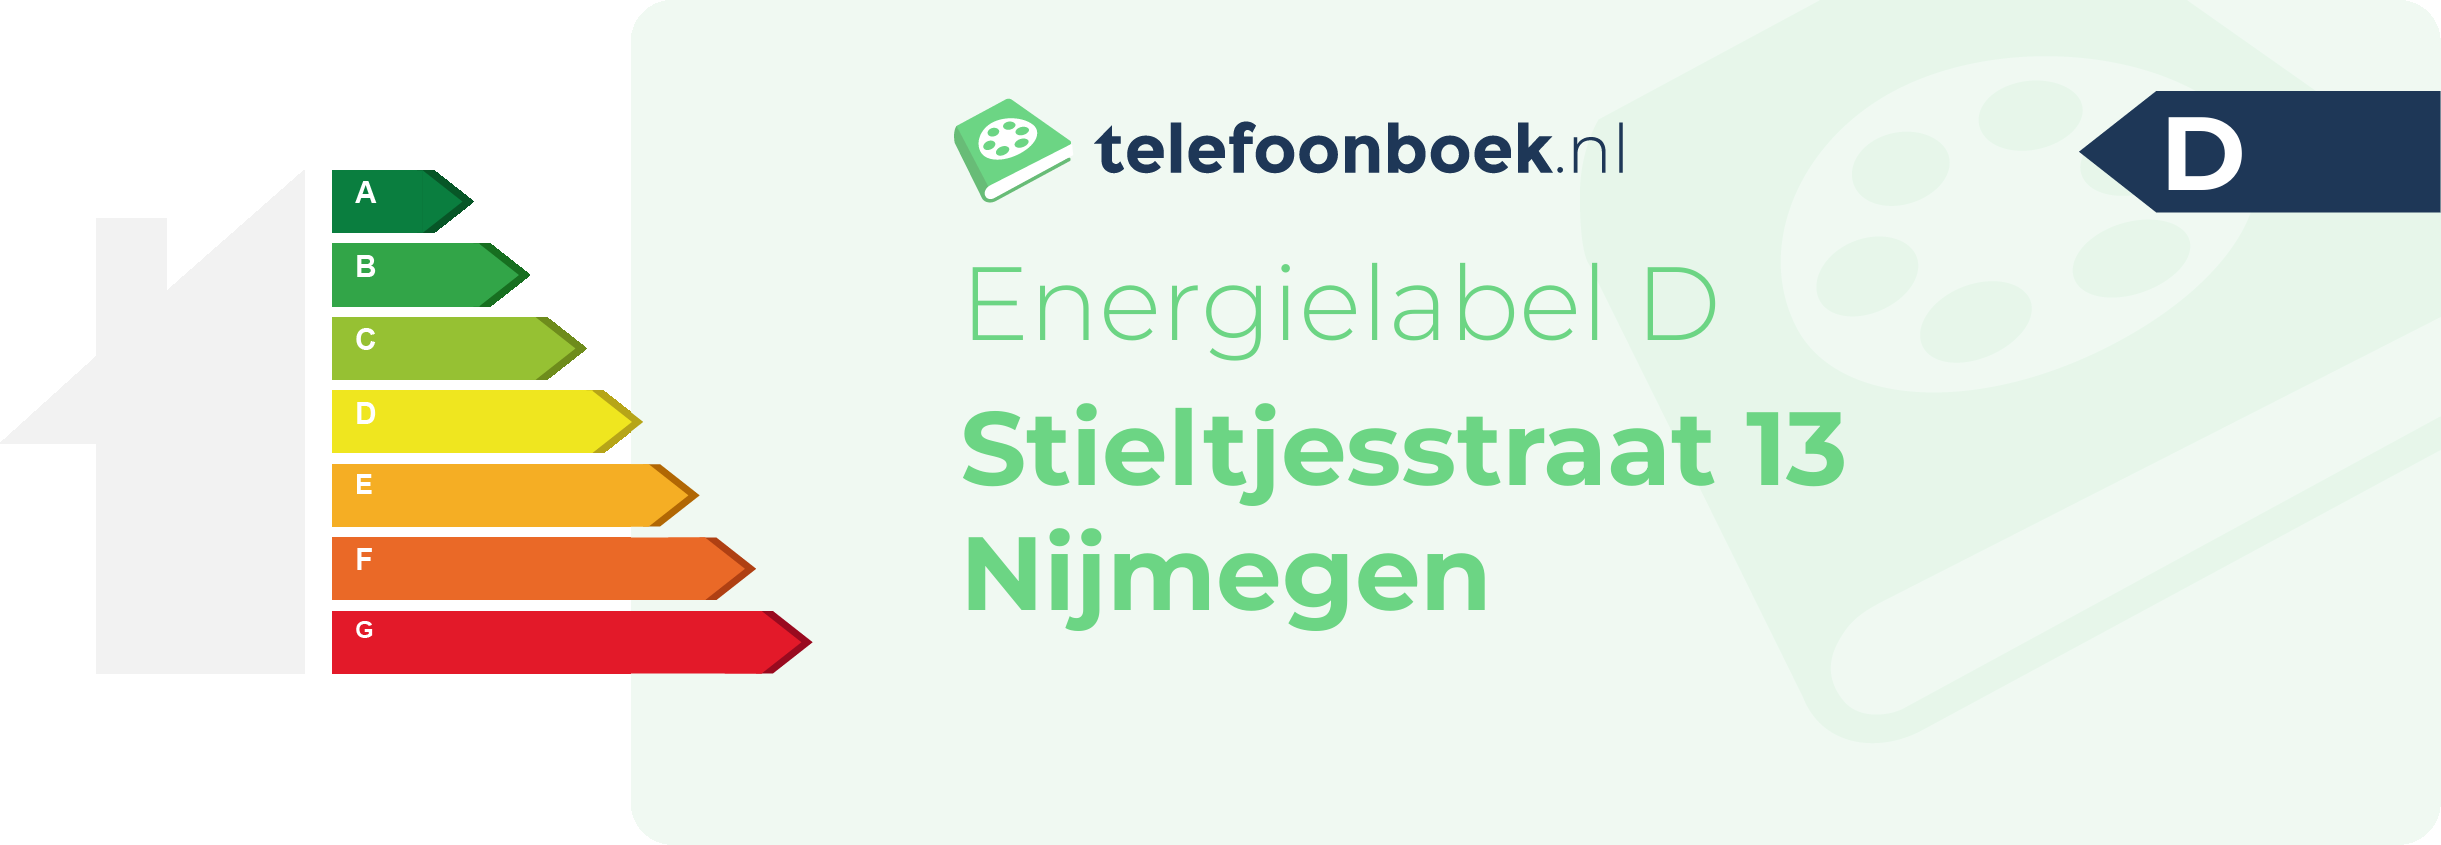 Energielabel Stieltjesstraat 13 Nijmegen